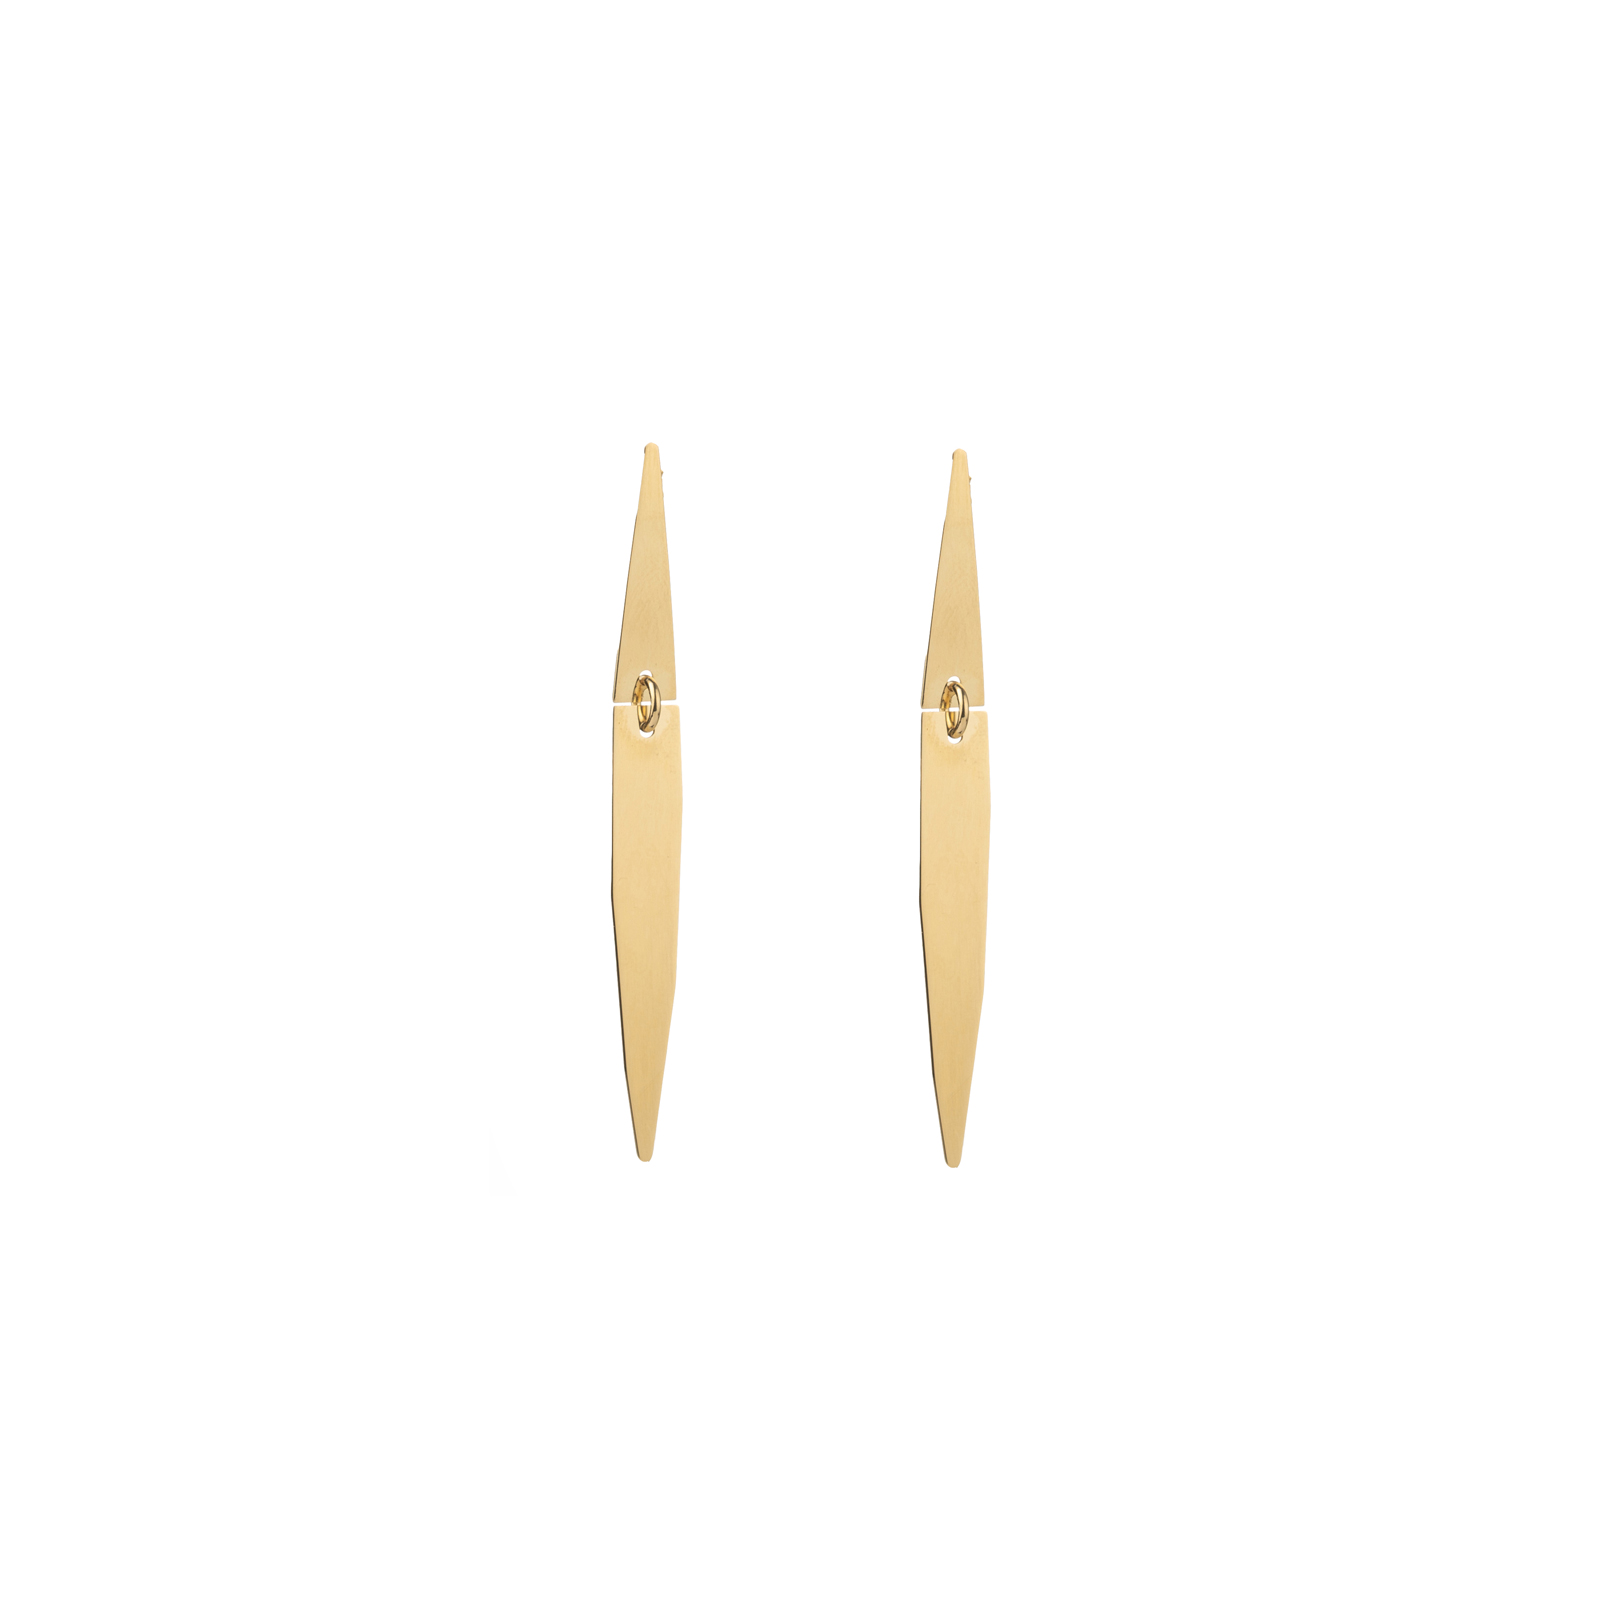 Ohrringe Glattes Silber Ohrringe lang - Raute 42*4,50mm - Vergoldet & Silber